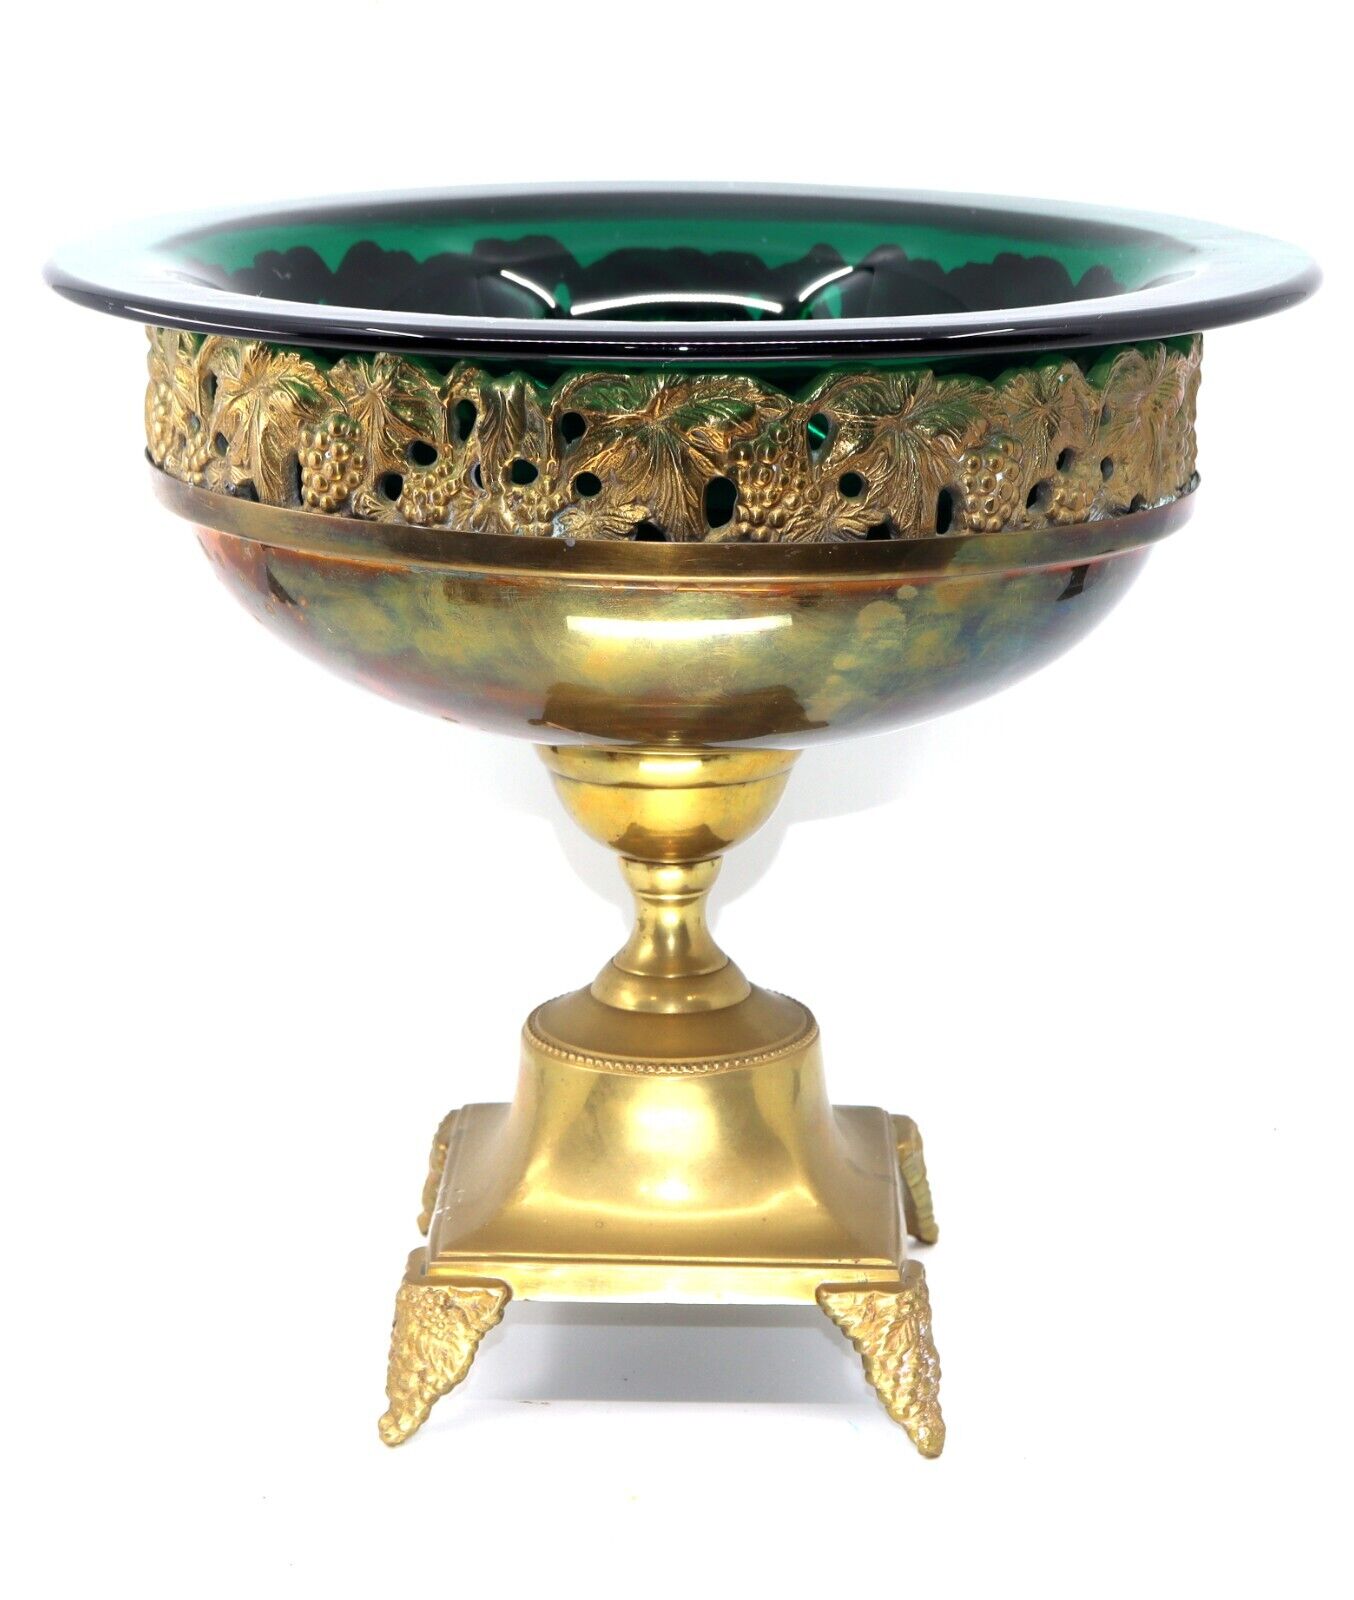 Vintage Brass Pedestal Fruit Bowl Grape Design Rare Original Green Glass Bowel